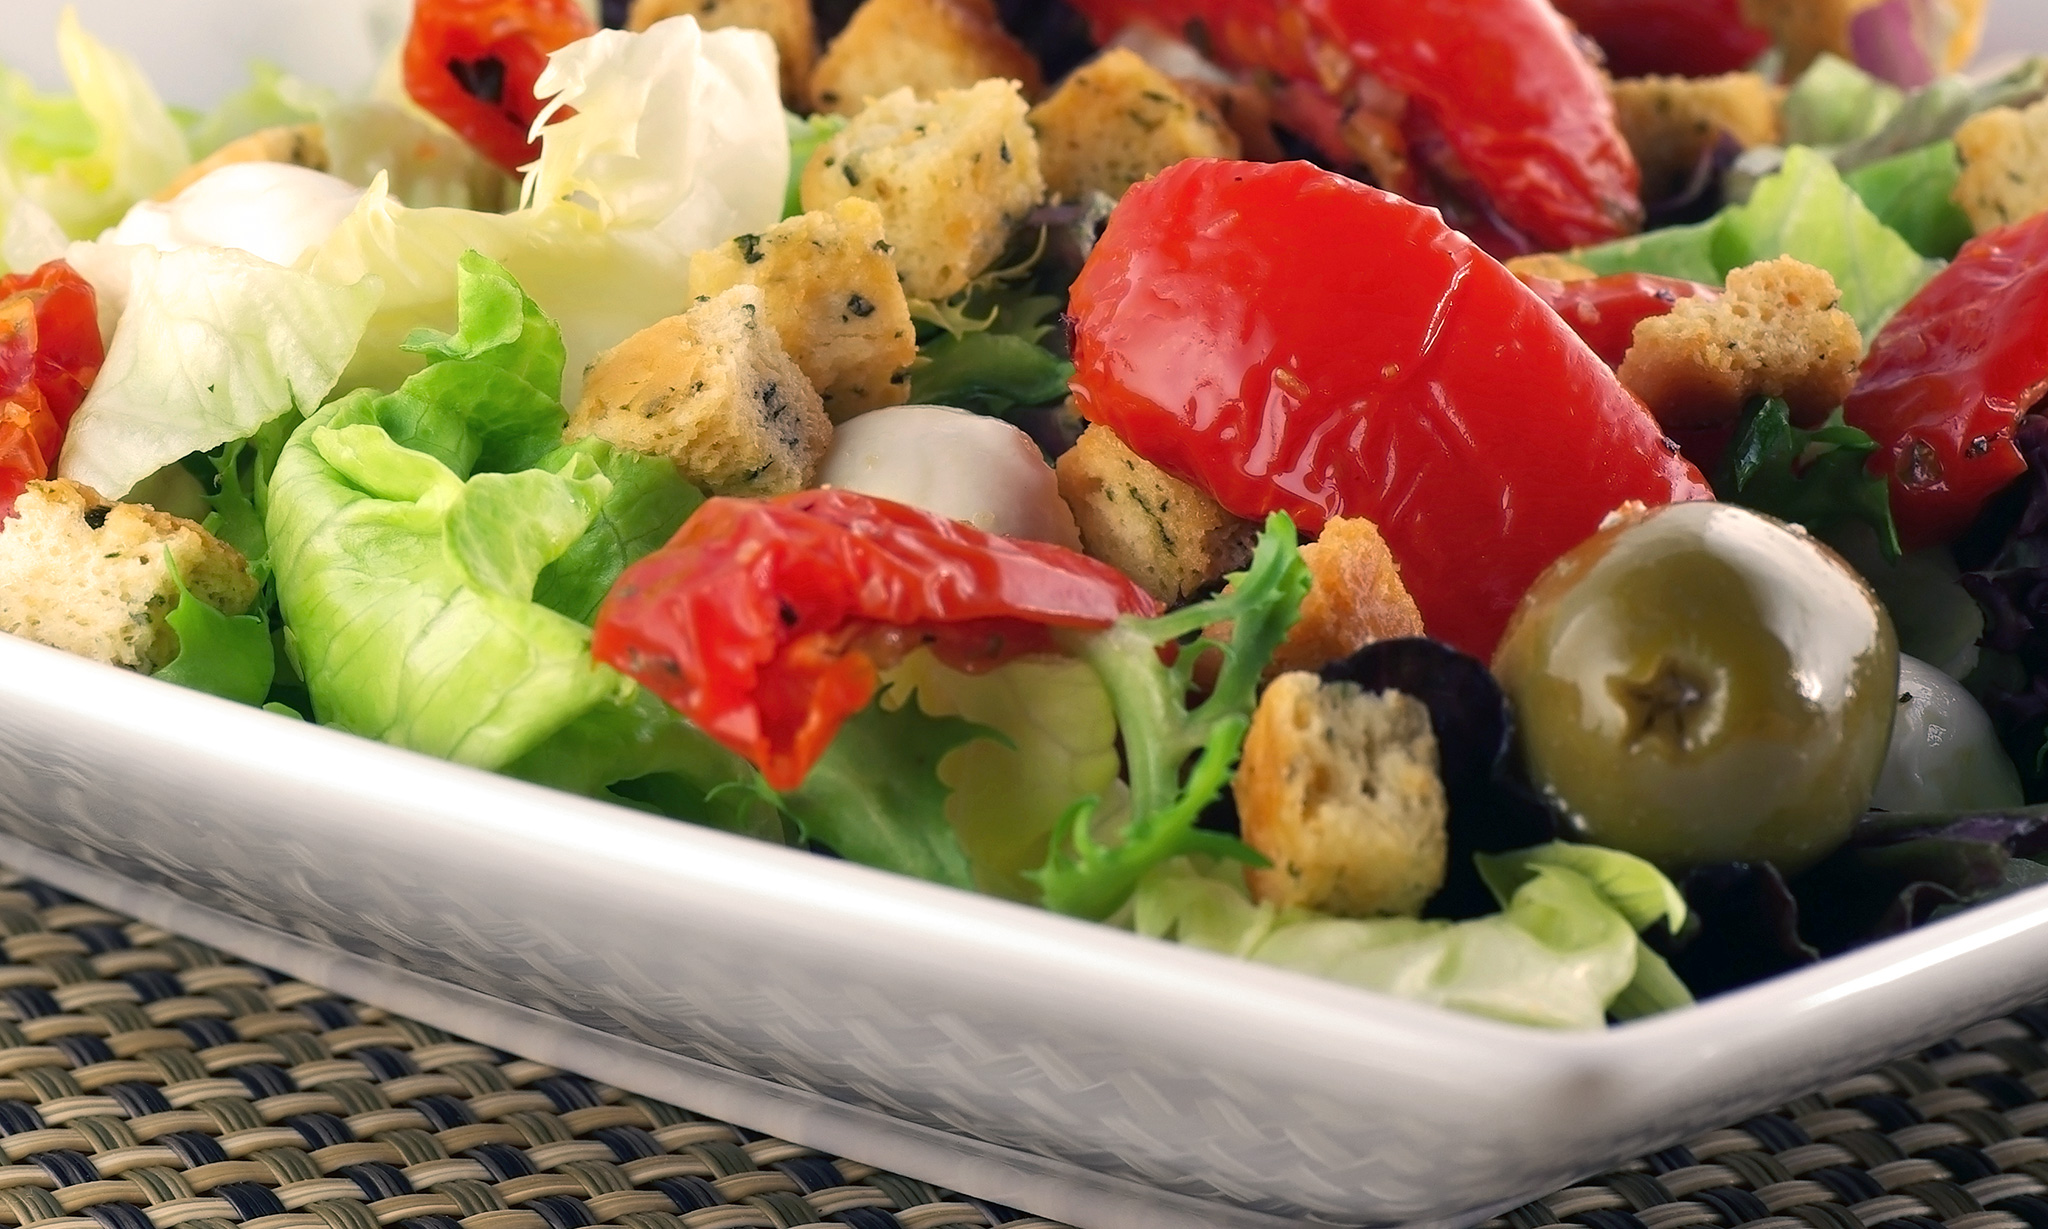 Salat s syrom mocarella vyalenymi tomatami2